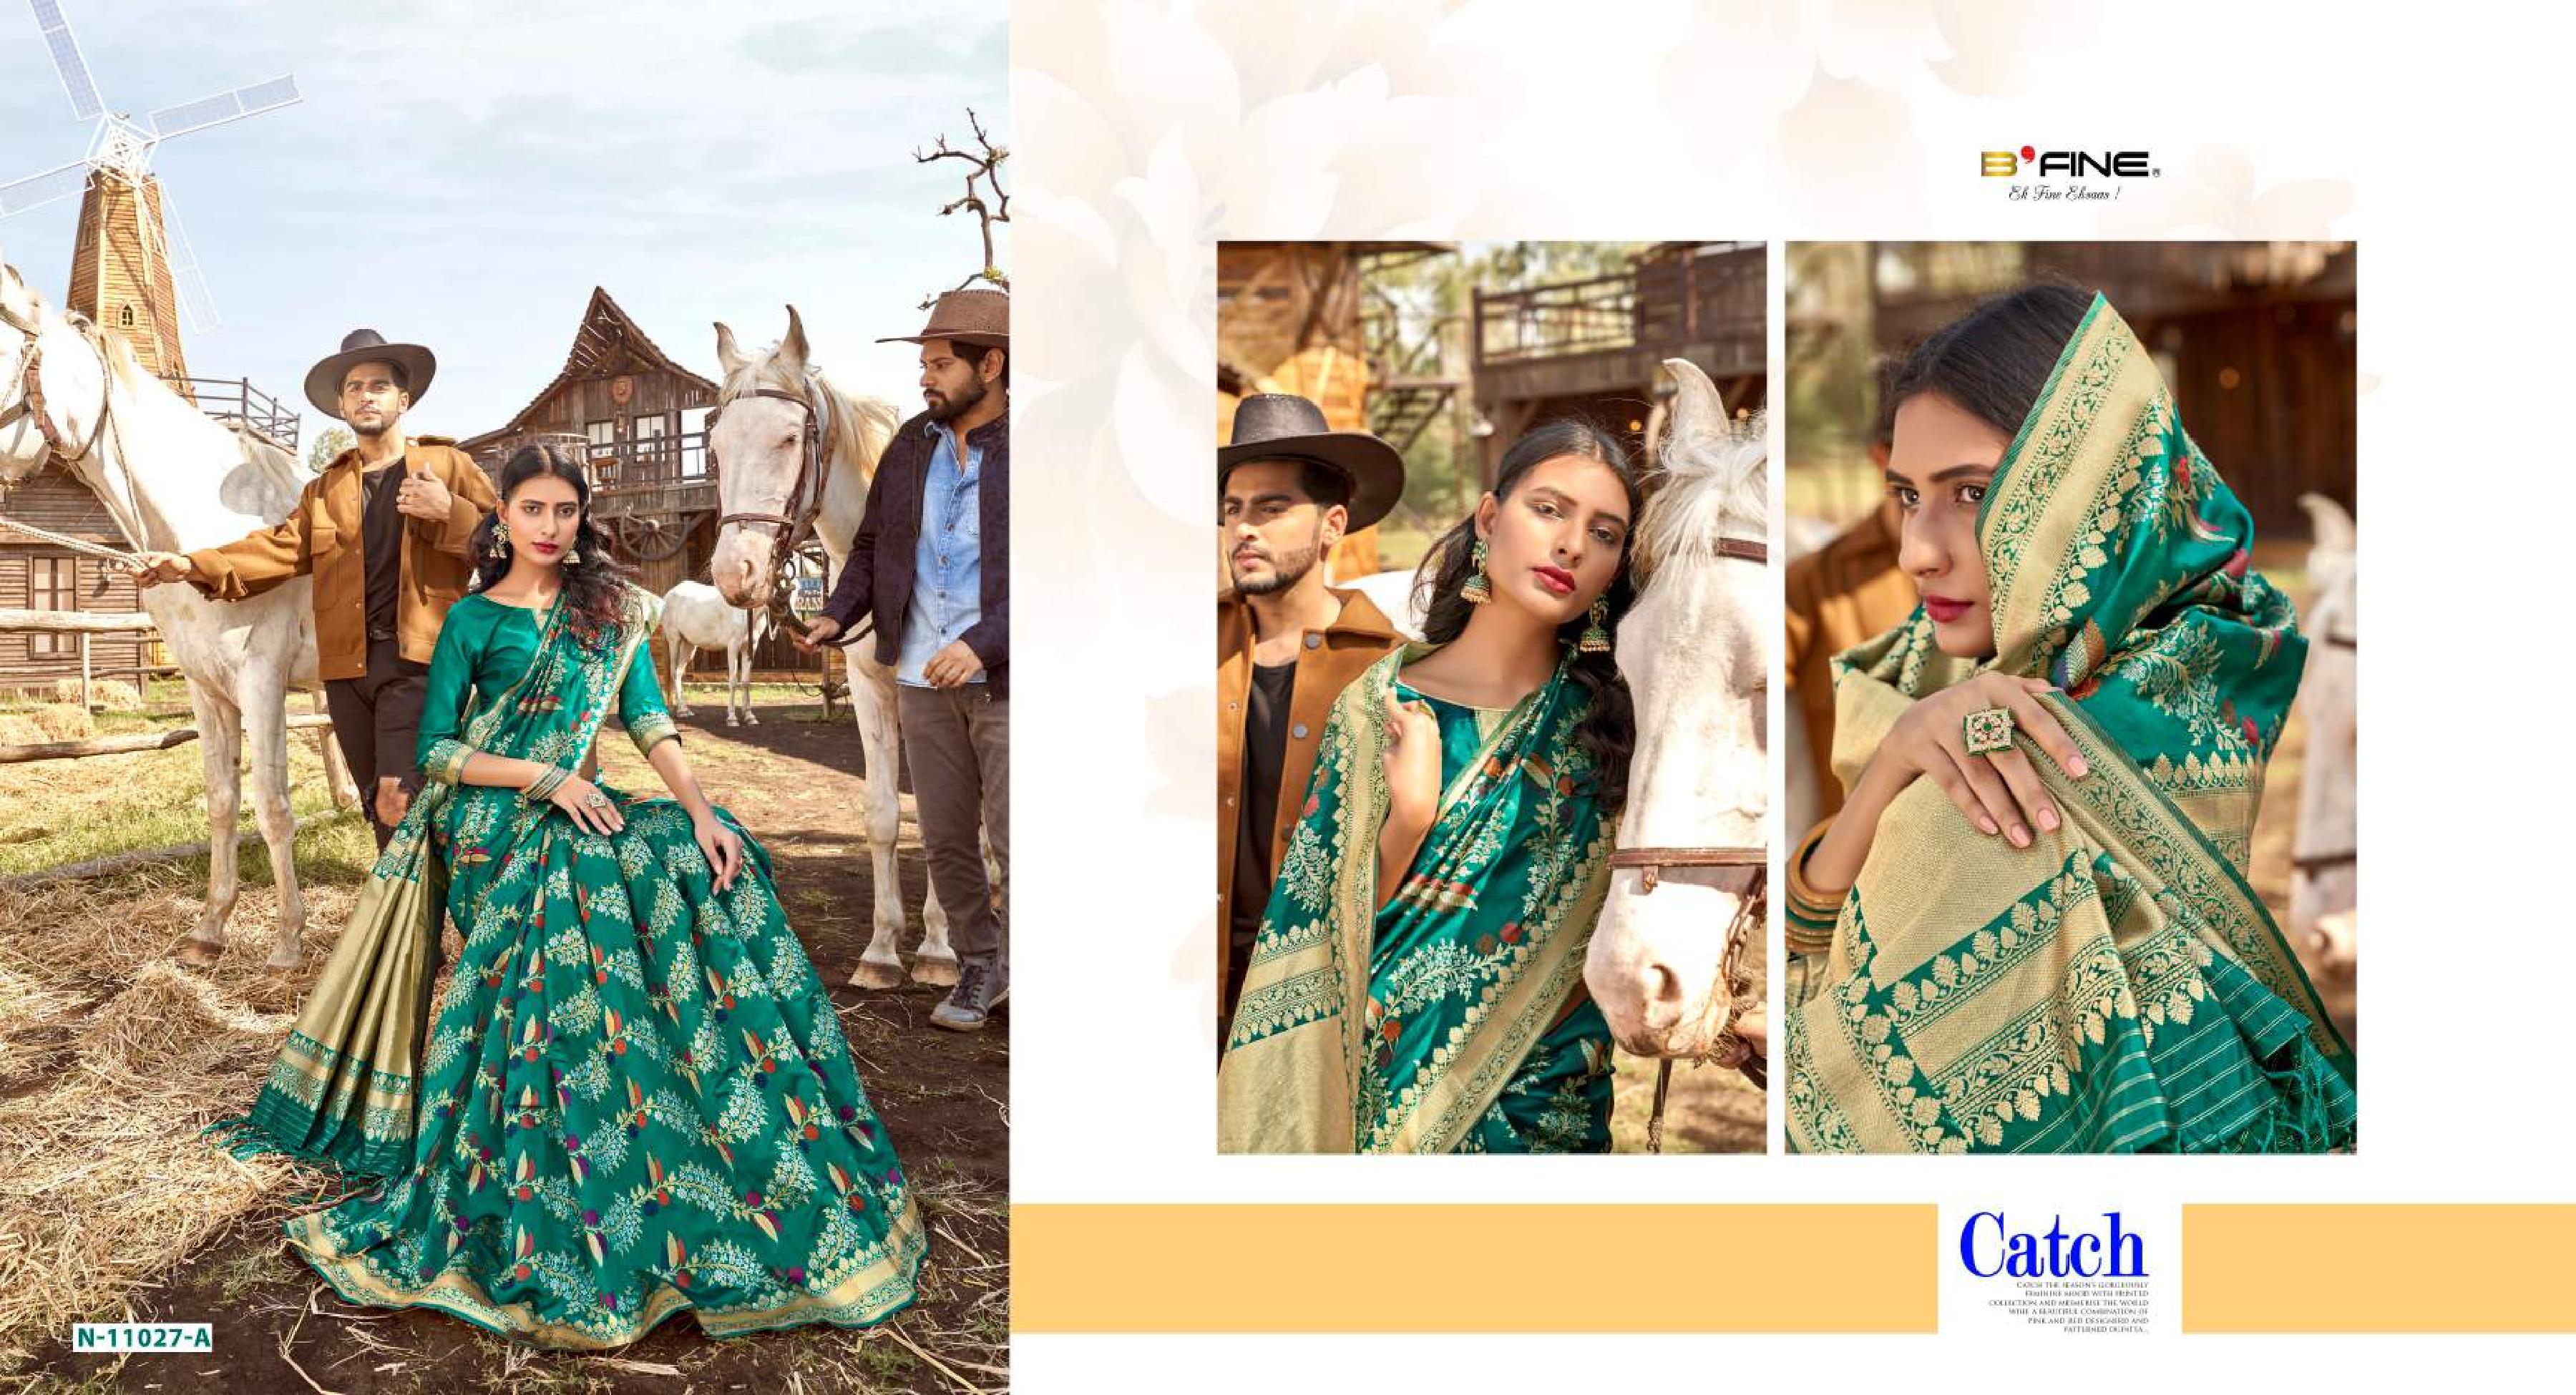 b fine art of zari silk elegant saree catalog